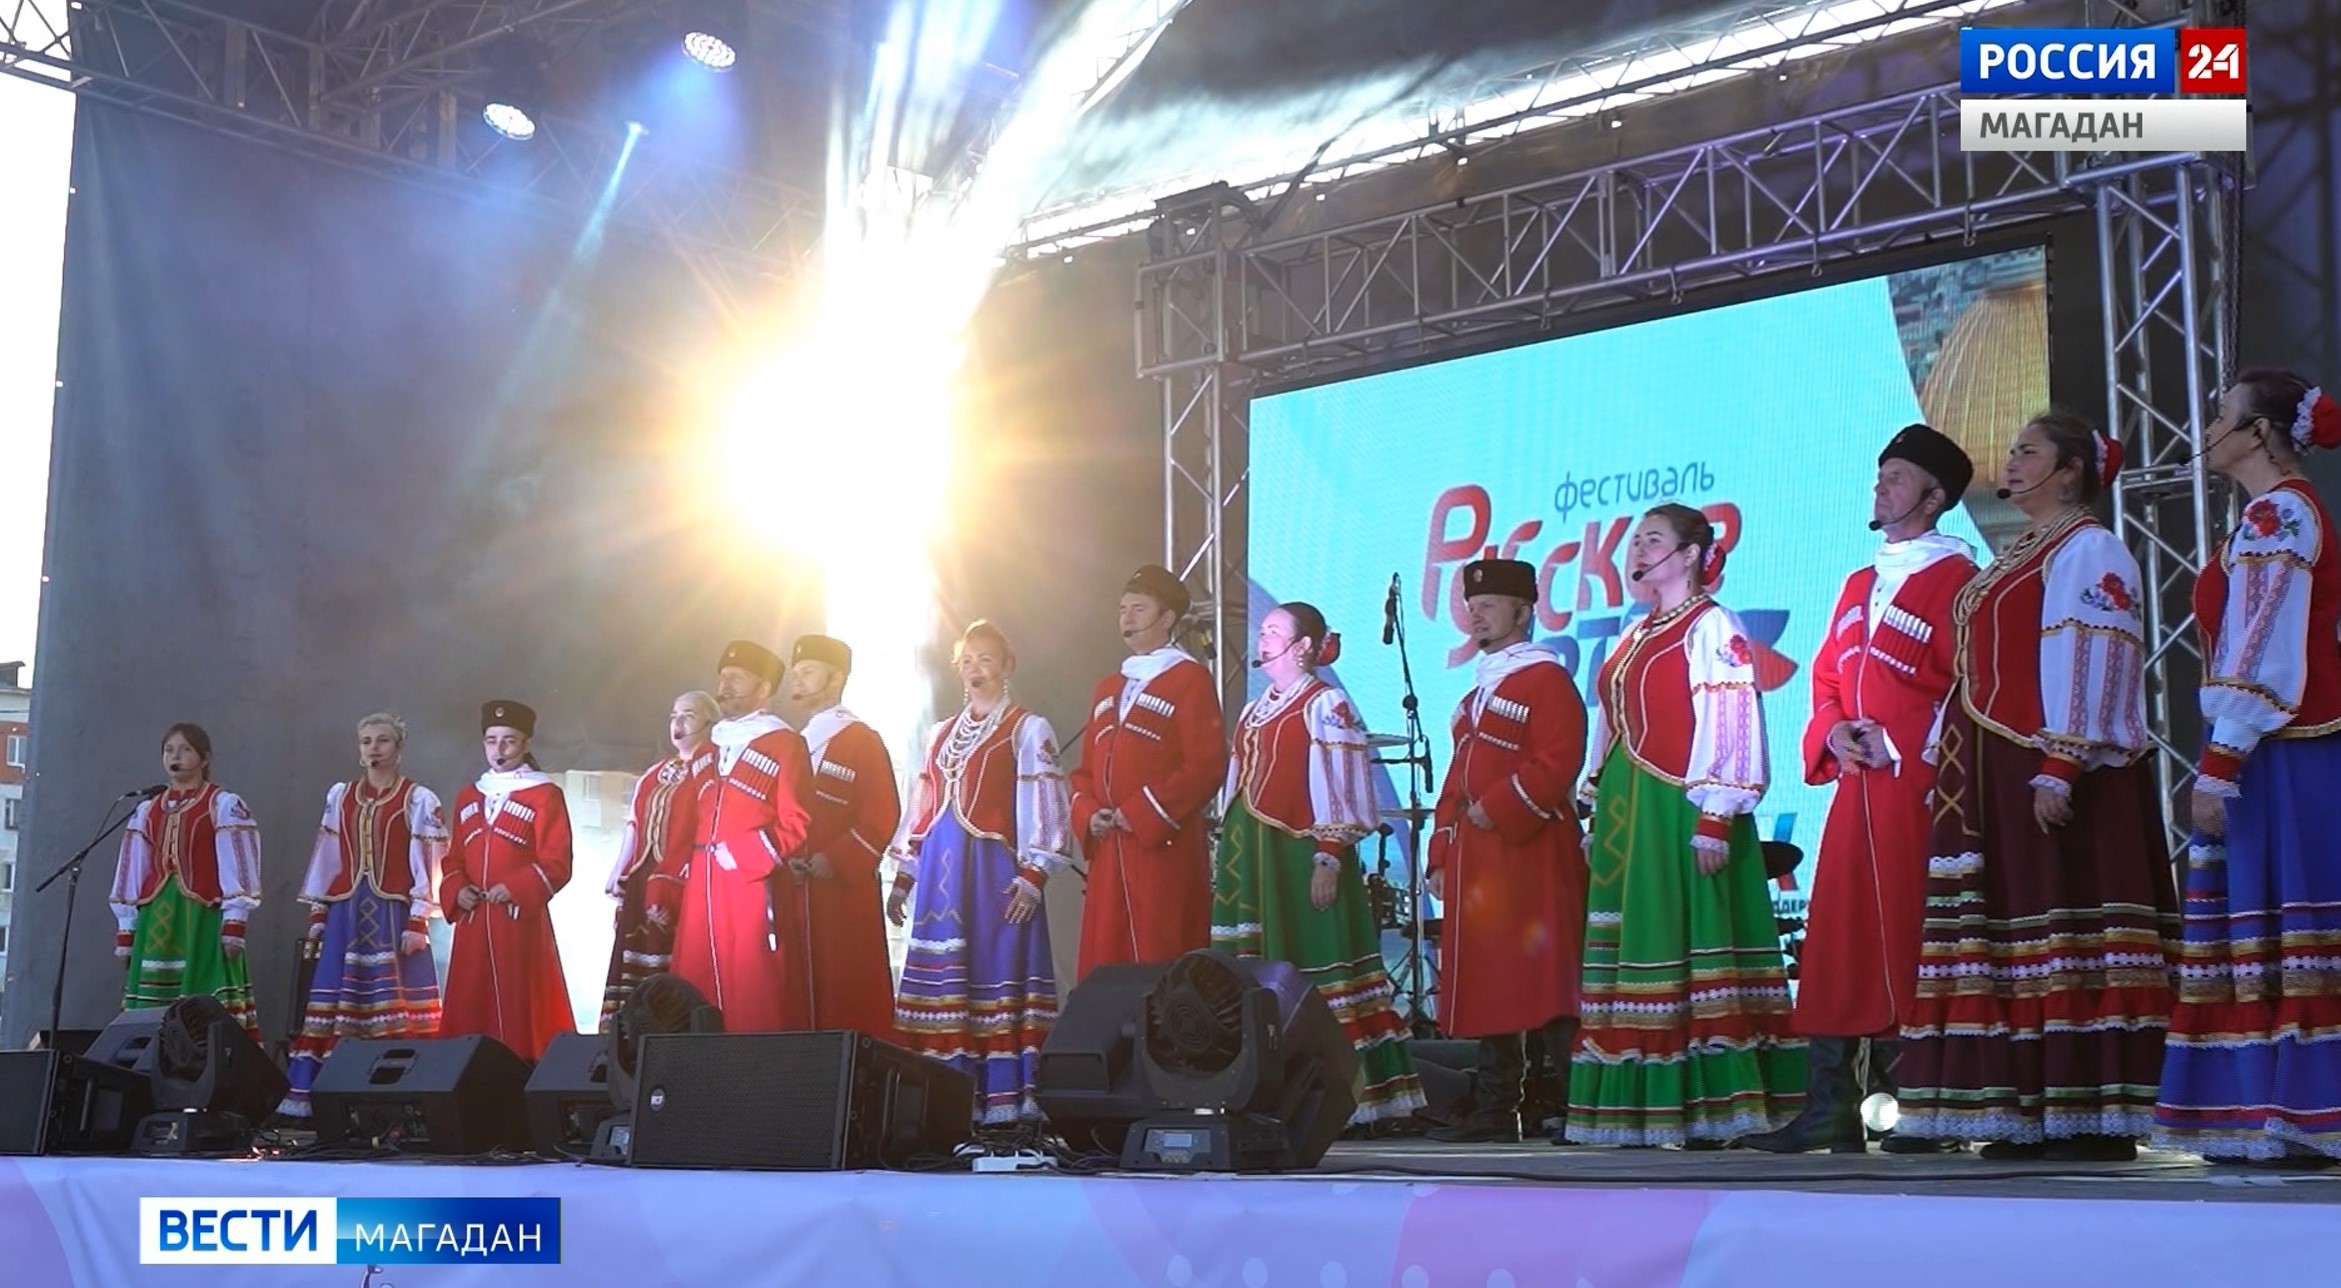 Танцы под открытым небом - фестиваль "Русское лето" в Магадане